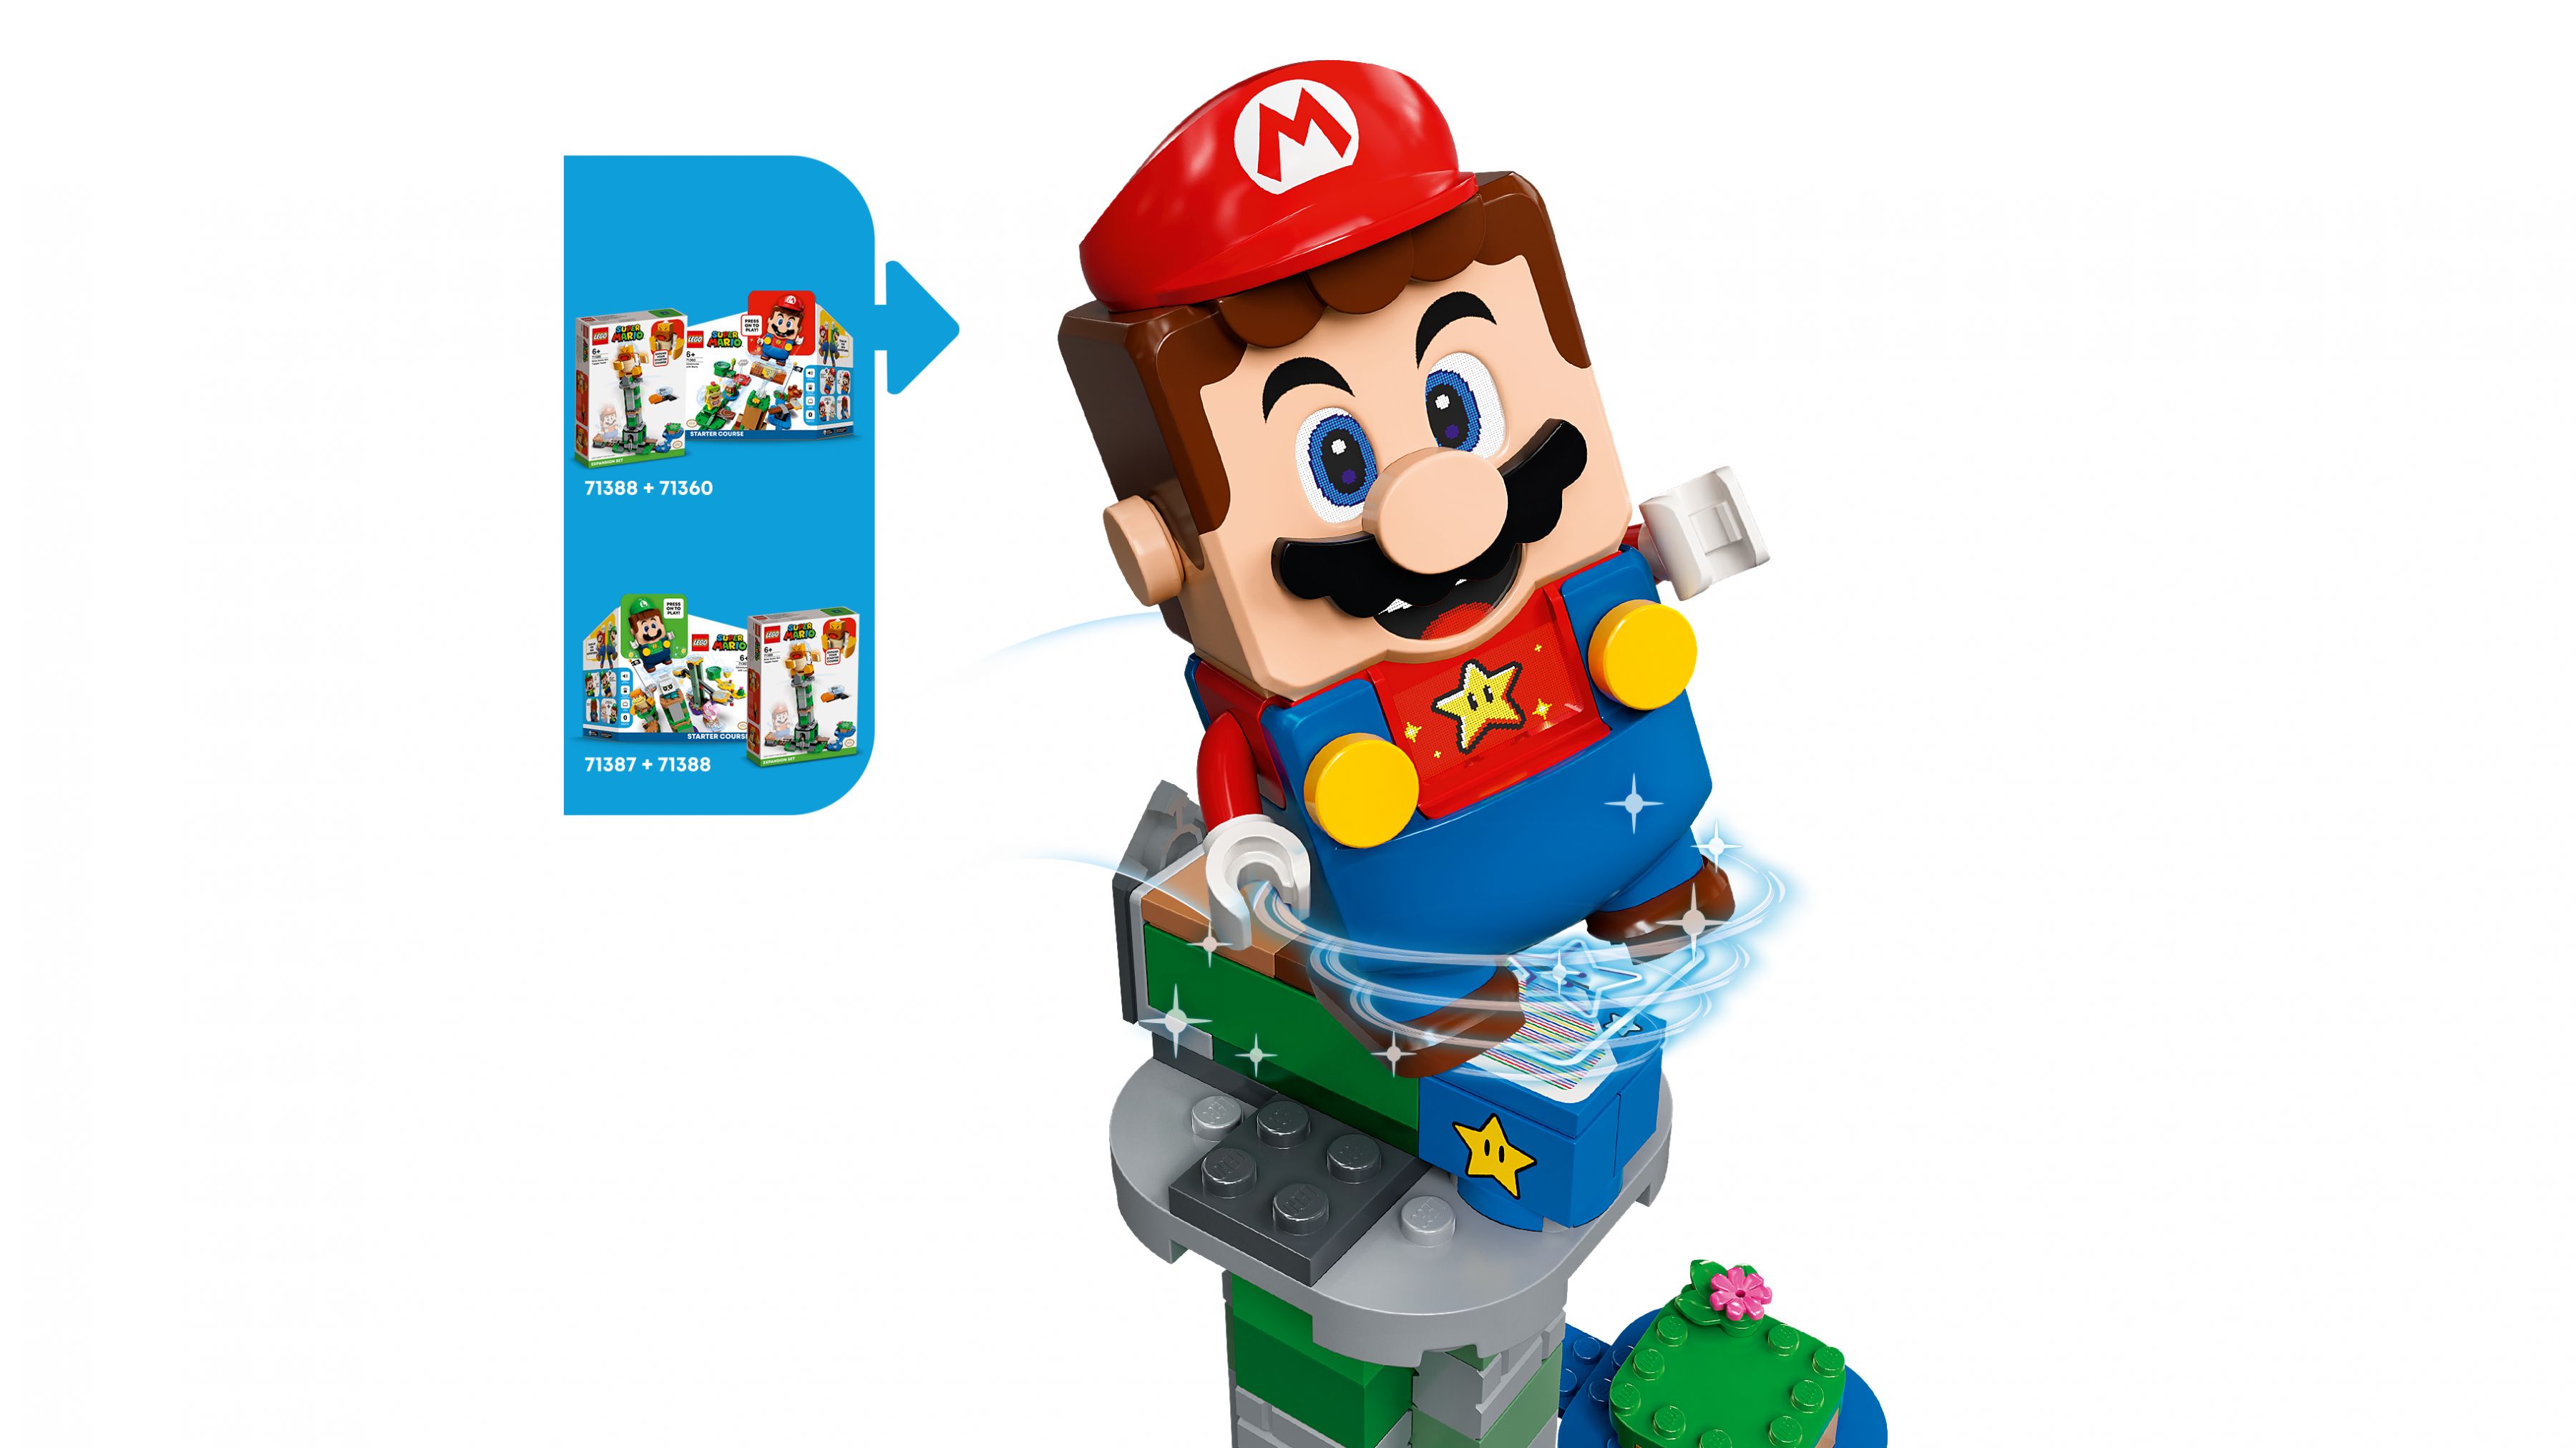 LEGO Super Mario 71388 Kippturm mit Sumo-Bruder-Boss – Erweiterungsset LEGO_71388_web_sec03_nobg.jpg